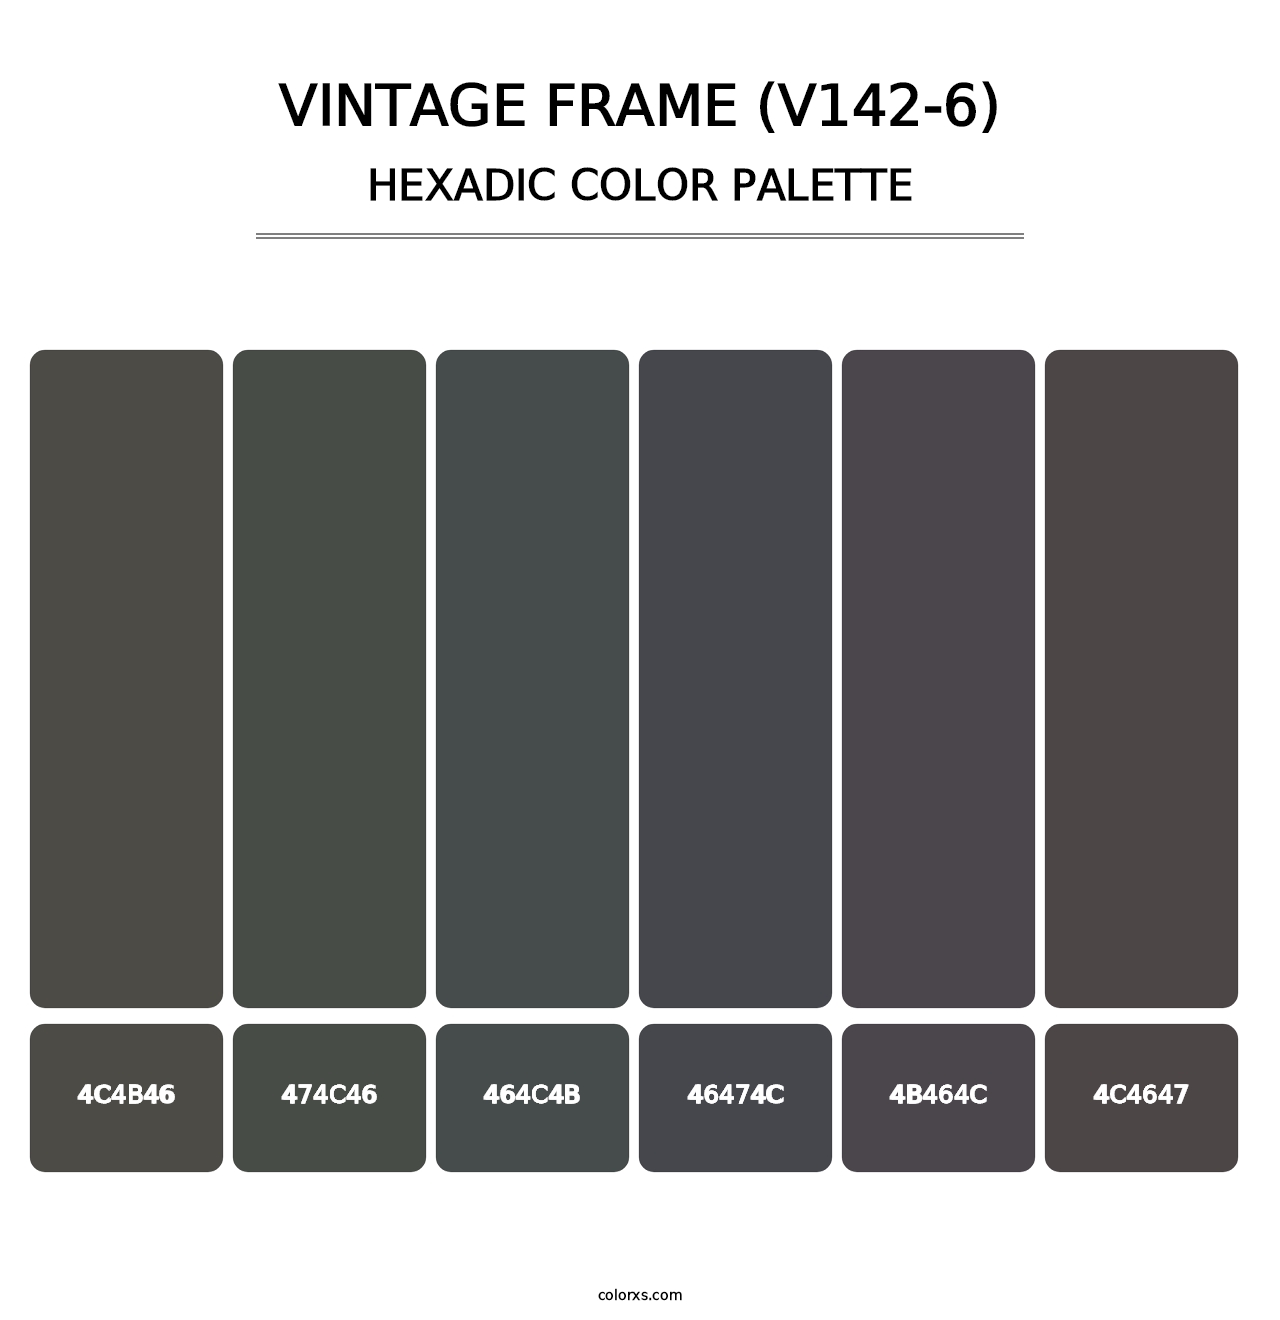 Vintage Frame (V142-6) - Hexadic Color Palette